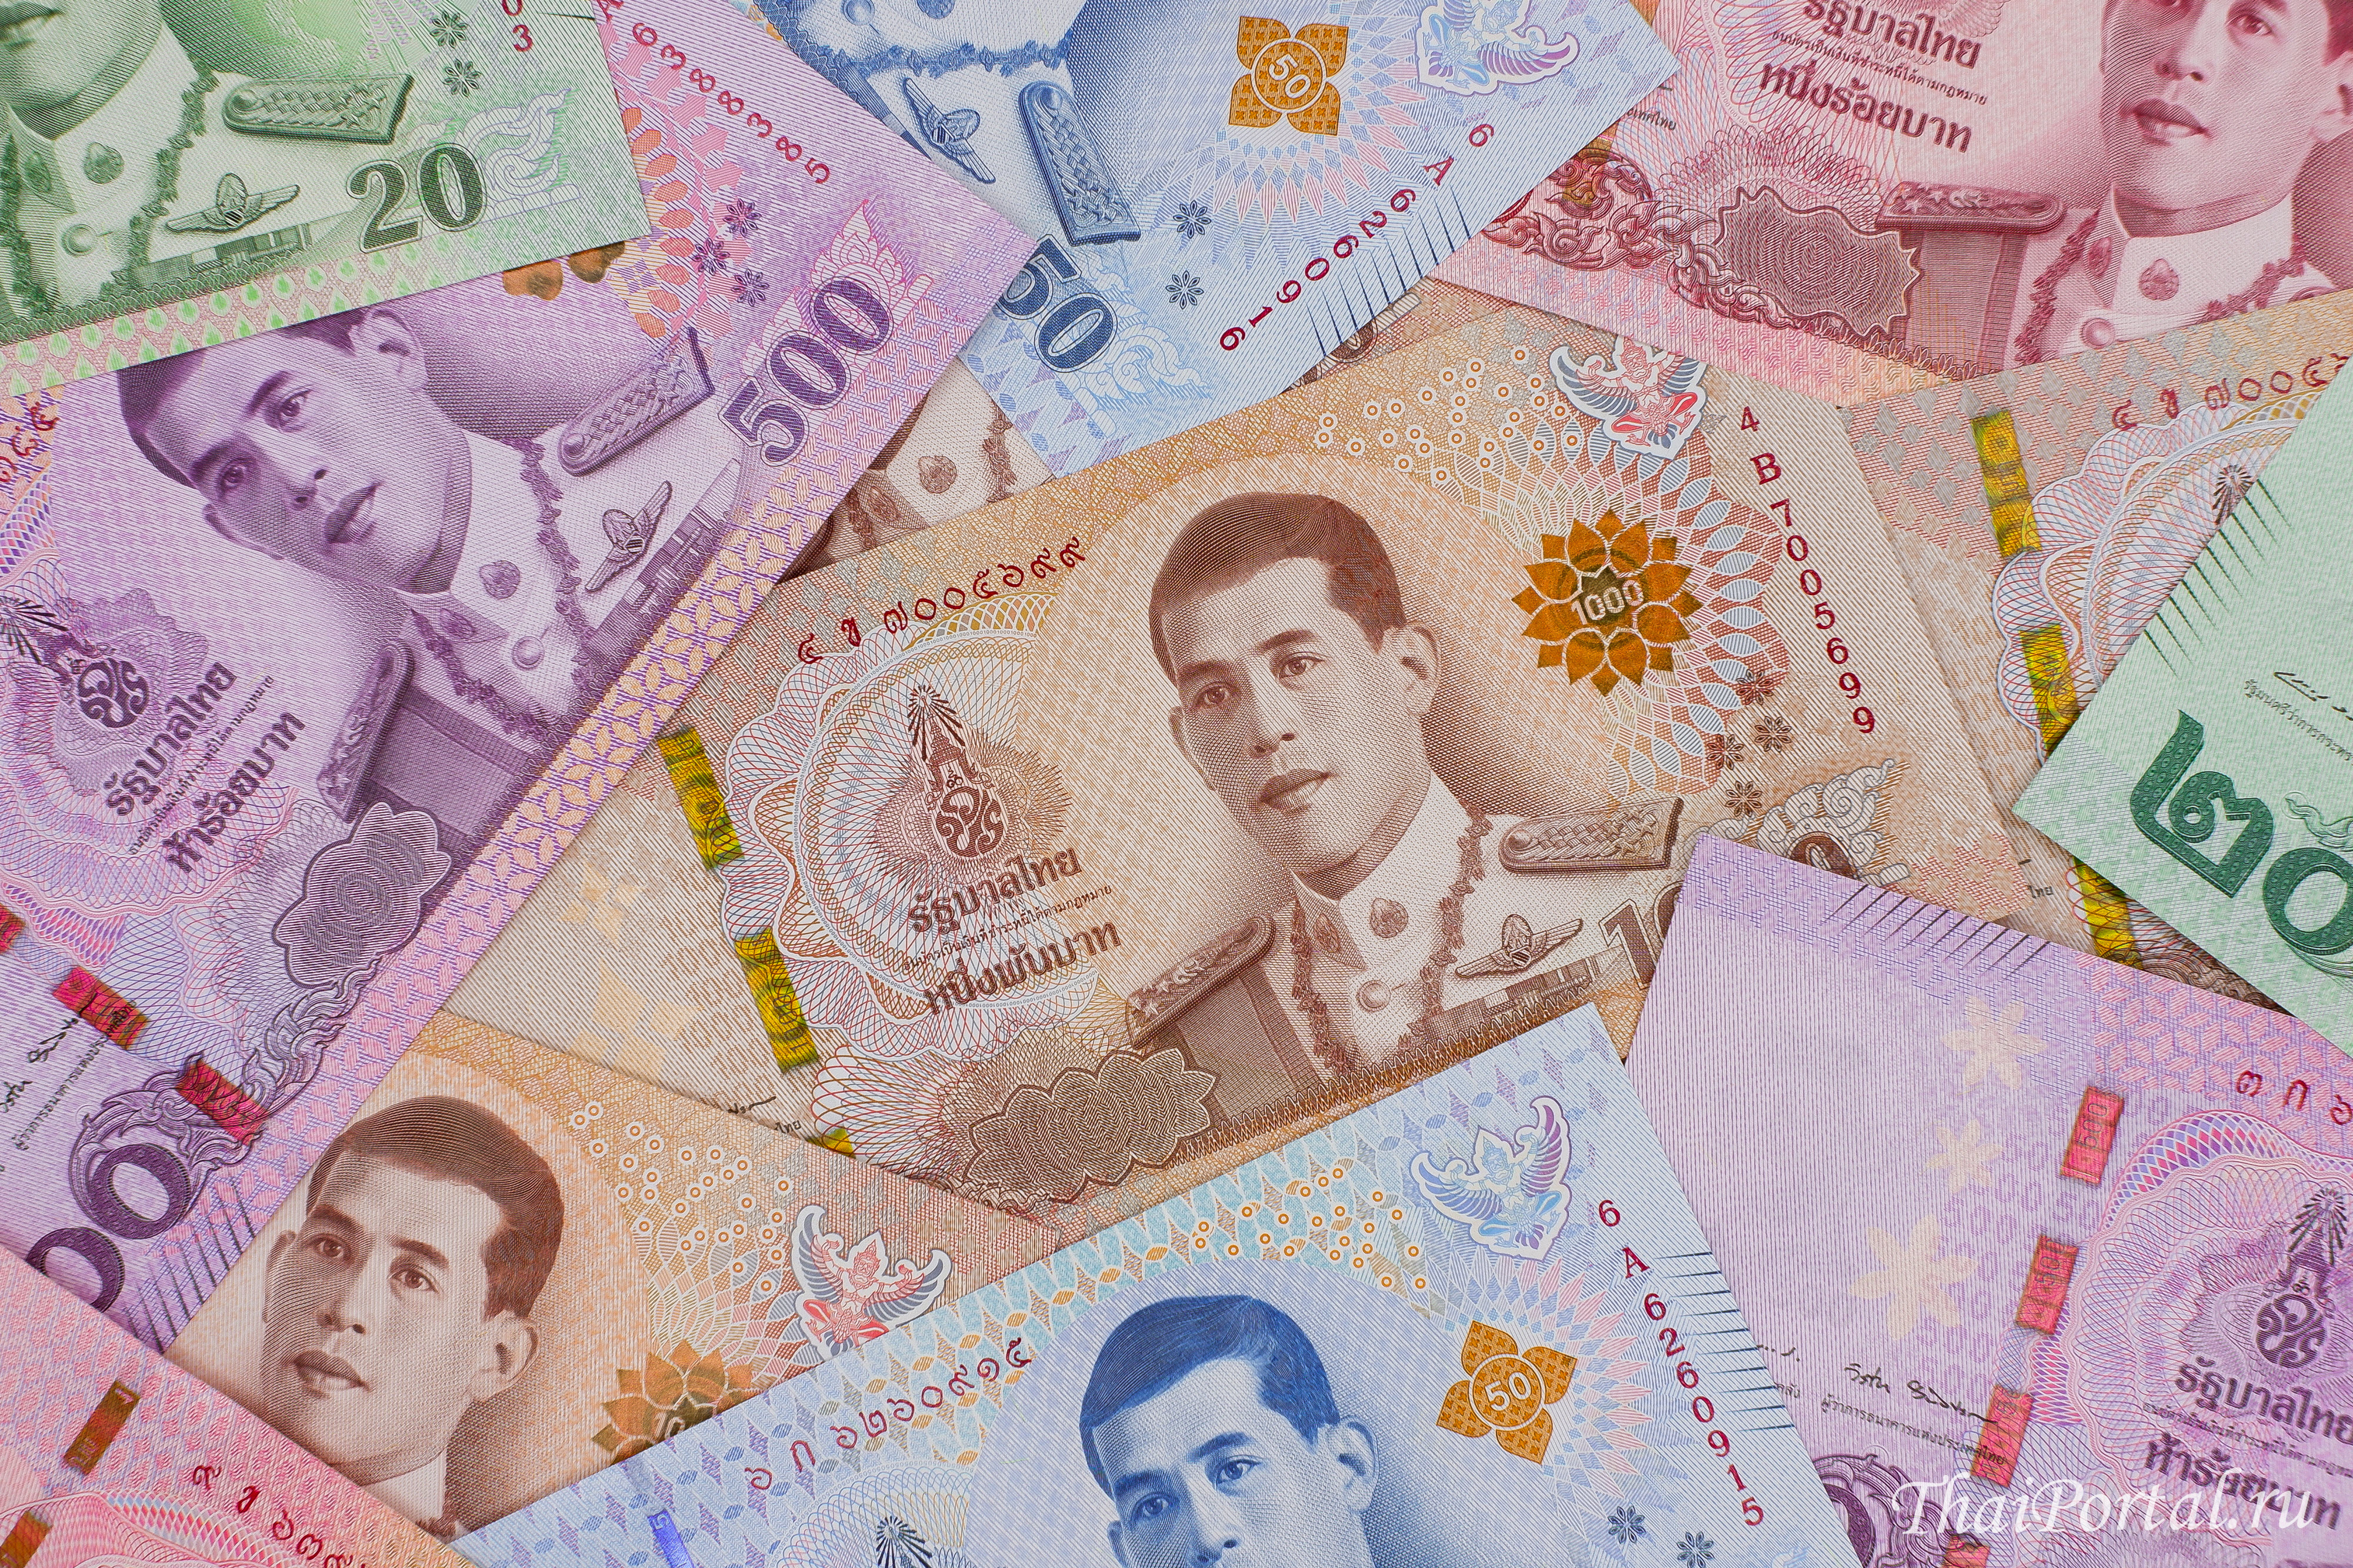 Обмен тайской валюты на рубли корпус для майнинга своими руками